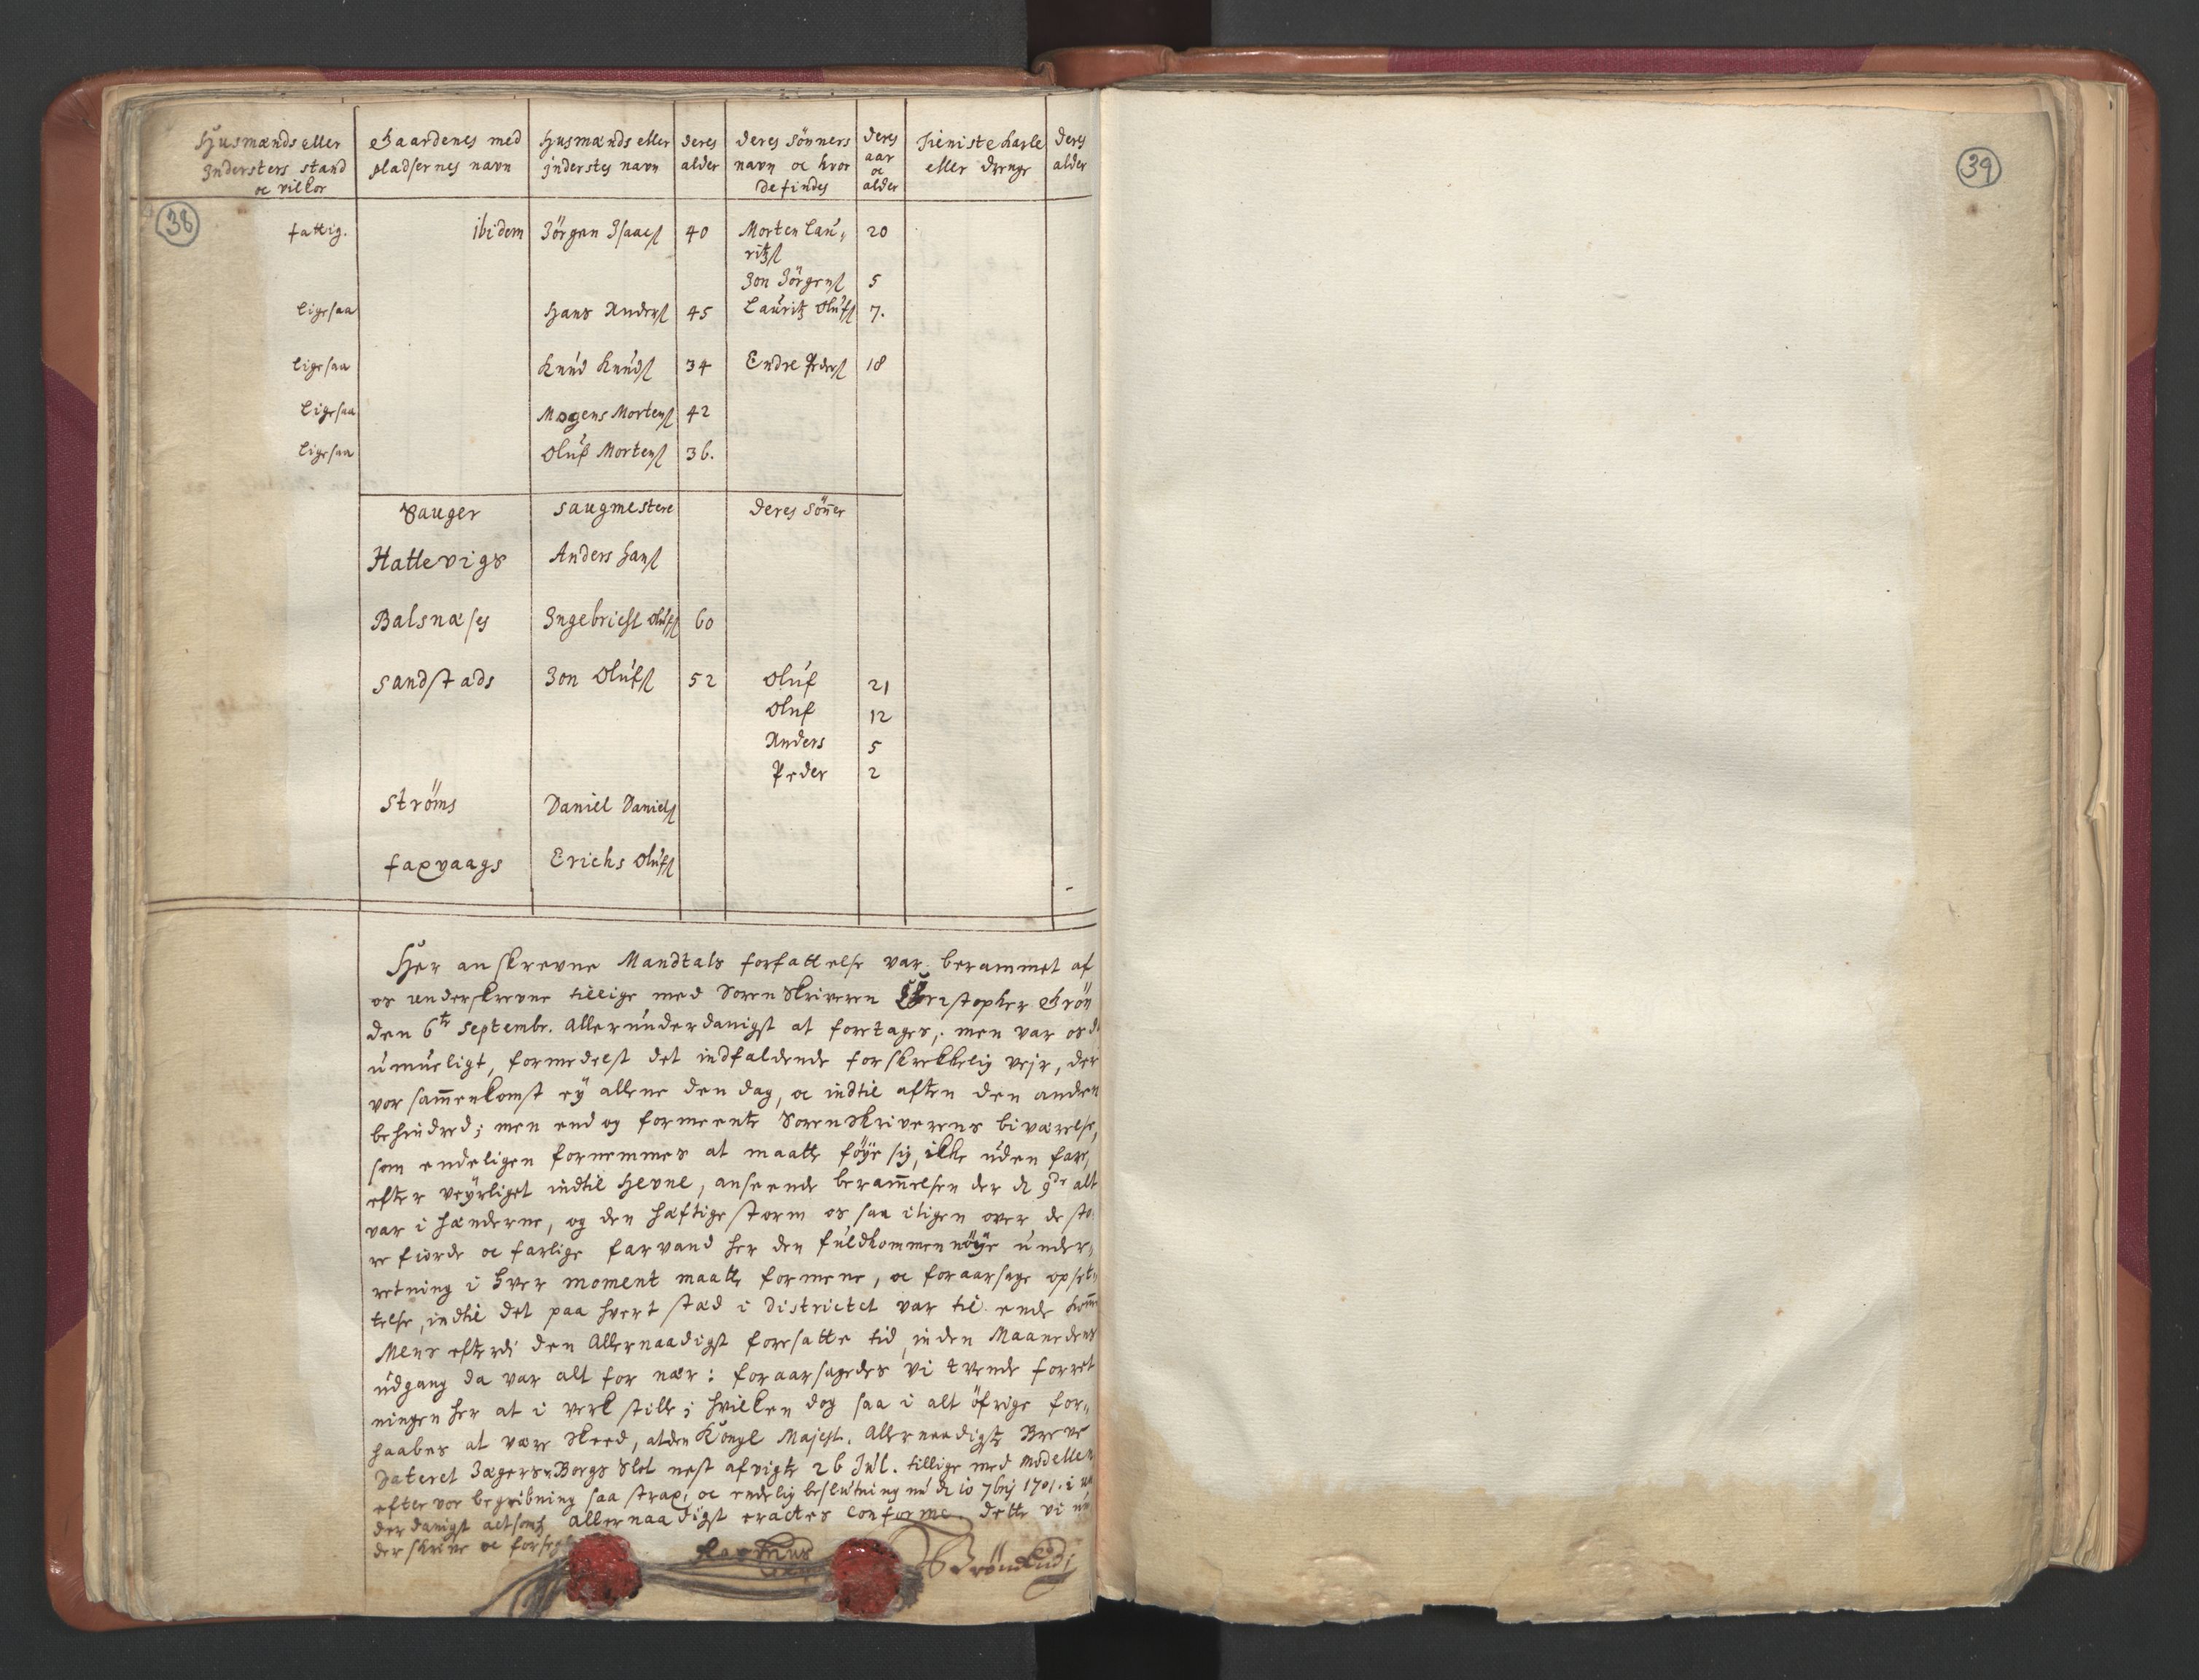 RA, Manntallet 1701, nr. 12: Fosen fogderi, 1701, s. 38-39